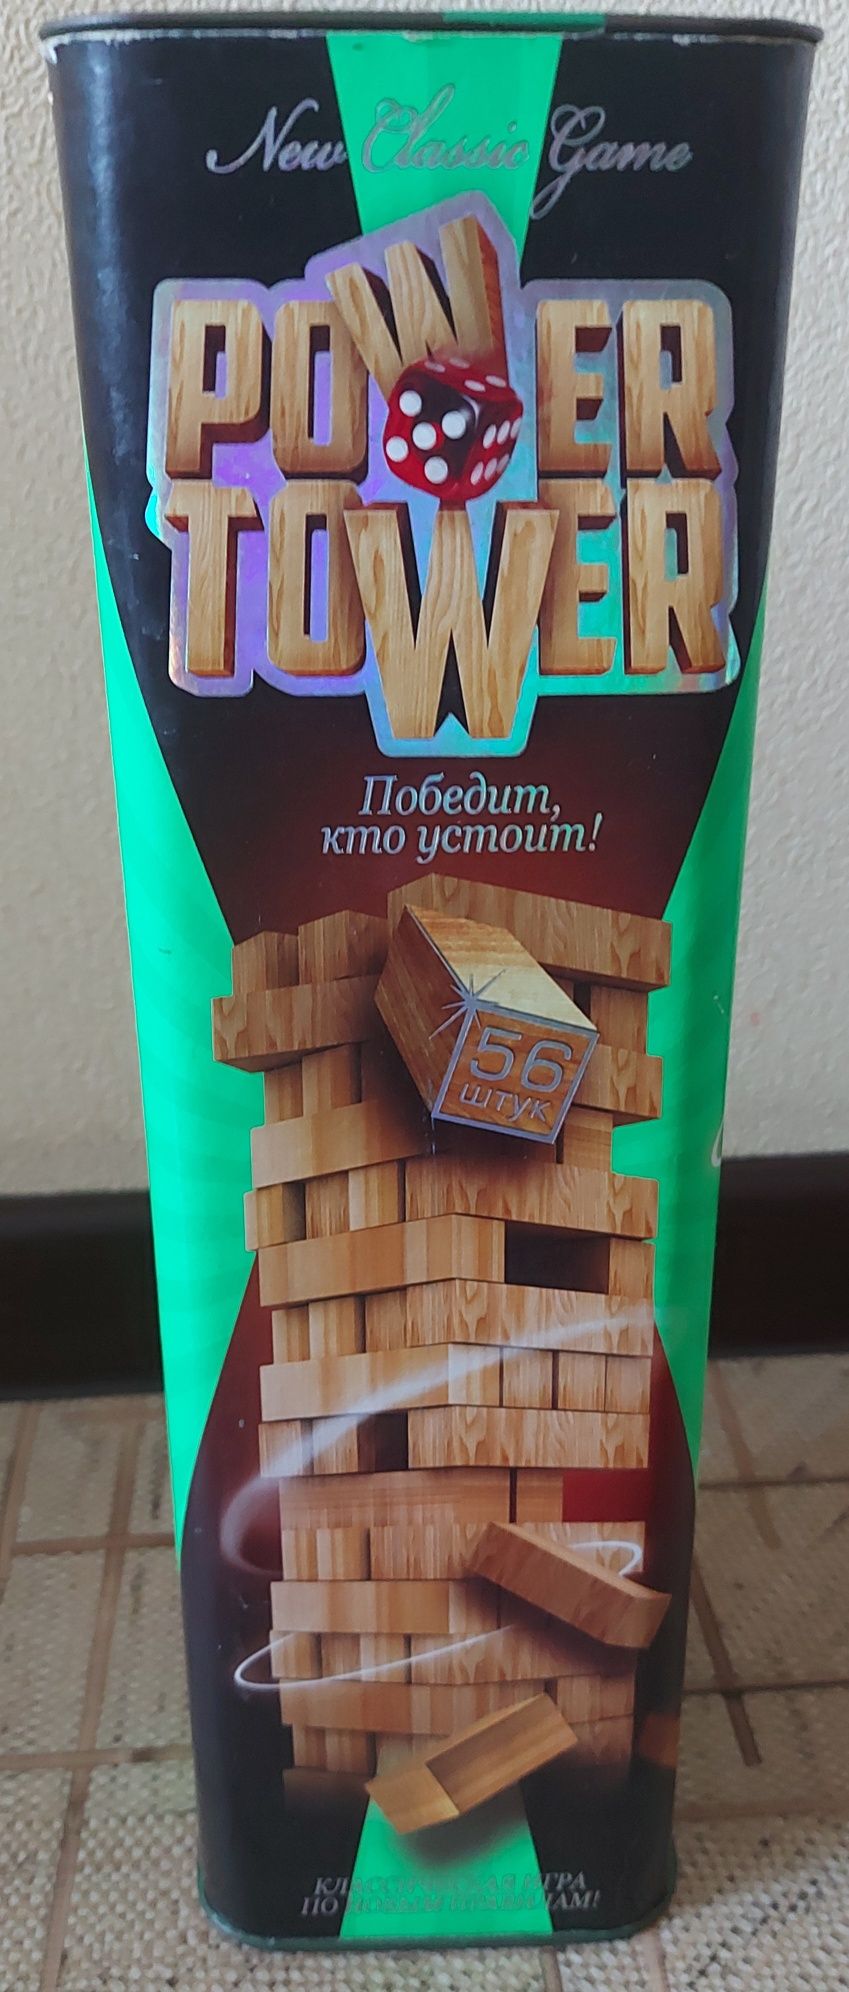 Продам power tower